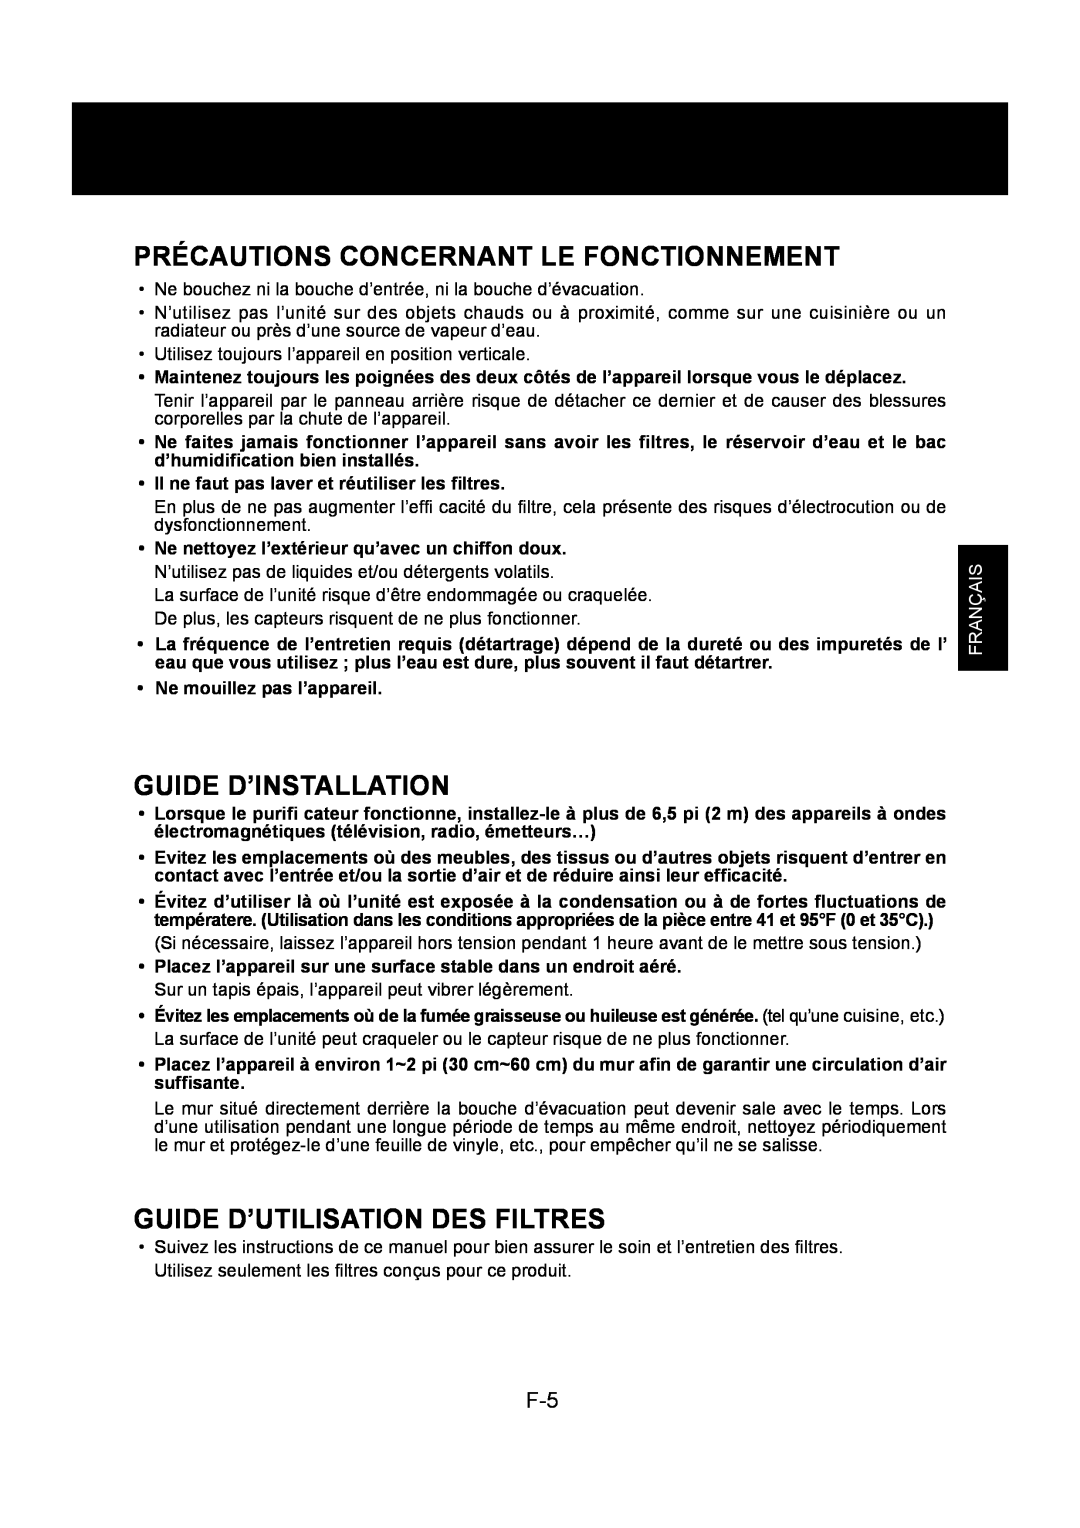 Sharp KC-830U Précautions Concernant Le Fonctionnement, Guide D’Installation, Guide D’Utilisation Des Filtres, Français 